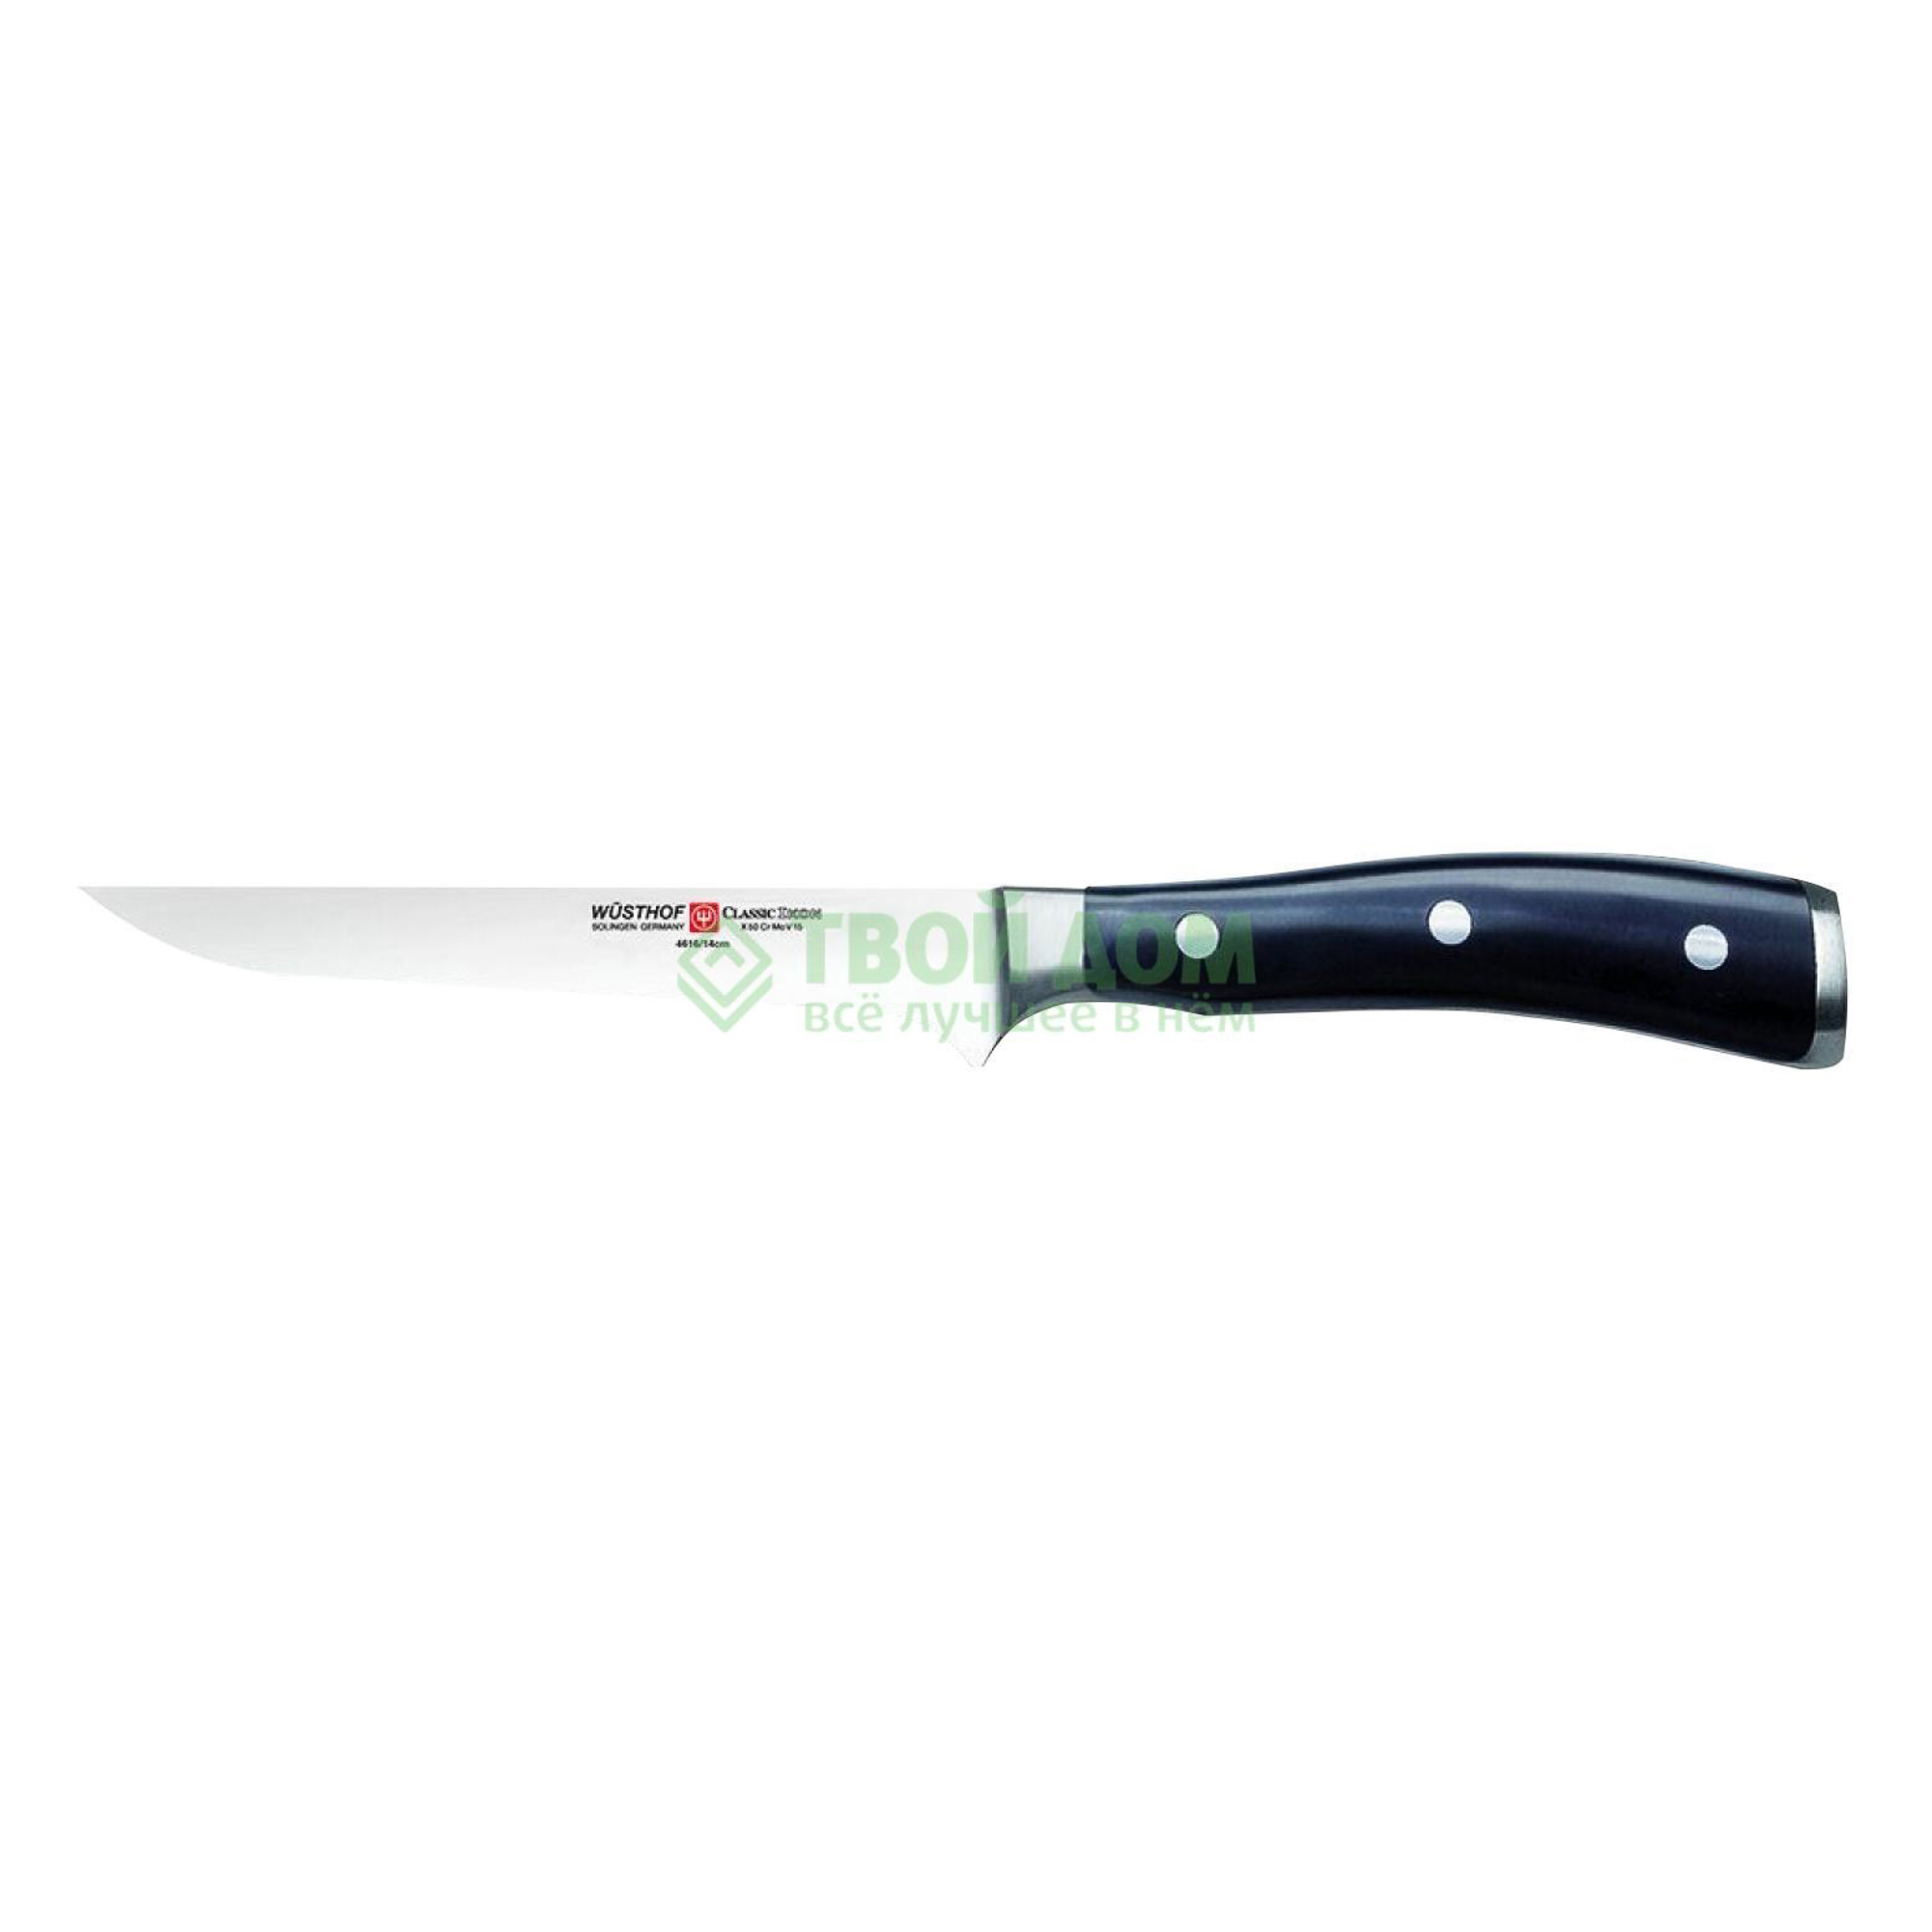 Нож мясной Wusthoff  14 см classic ikon (4616 WUS), цвет черный - фото 1